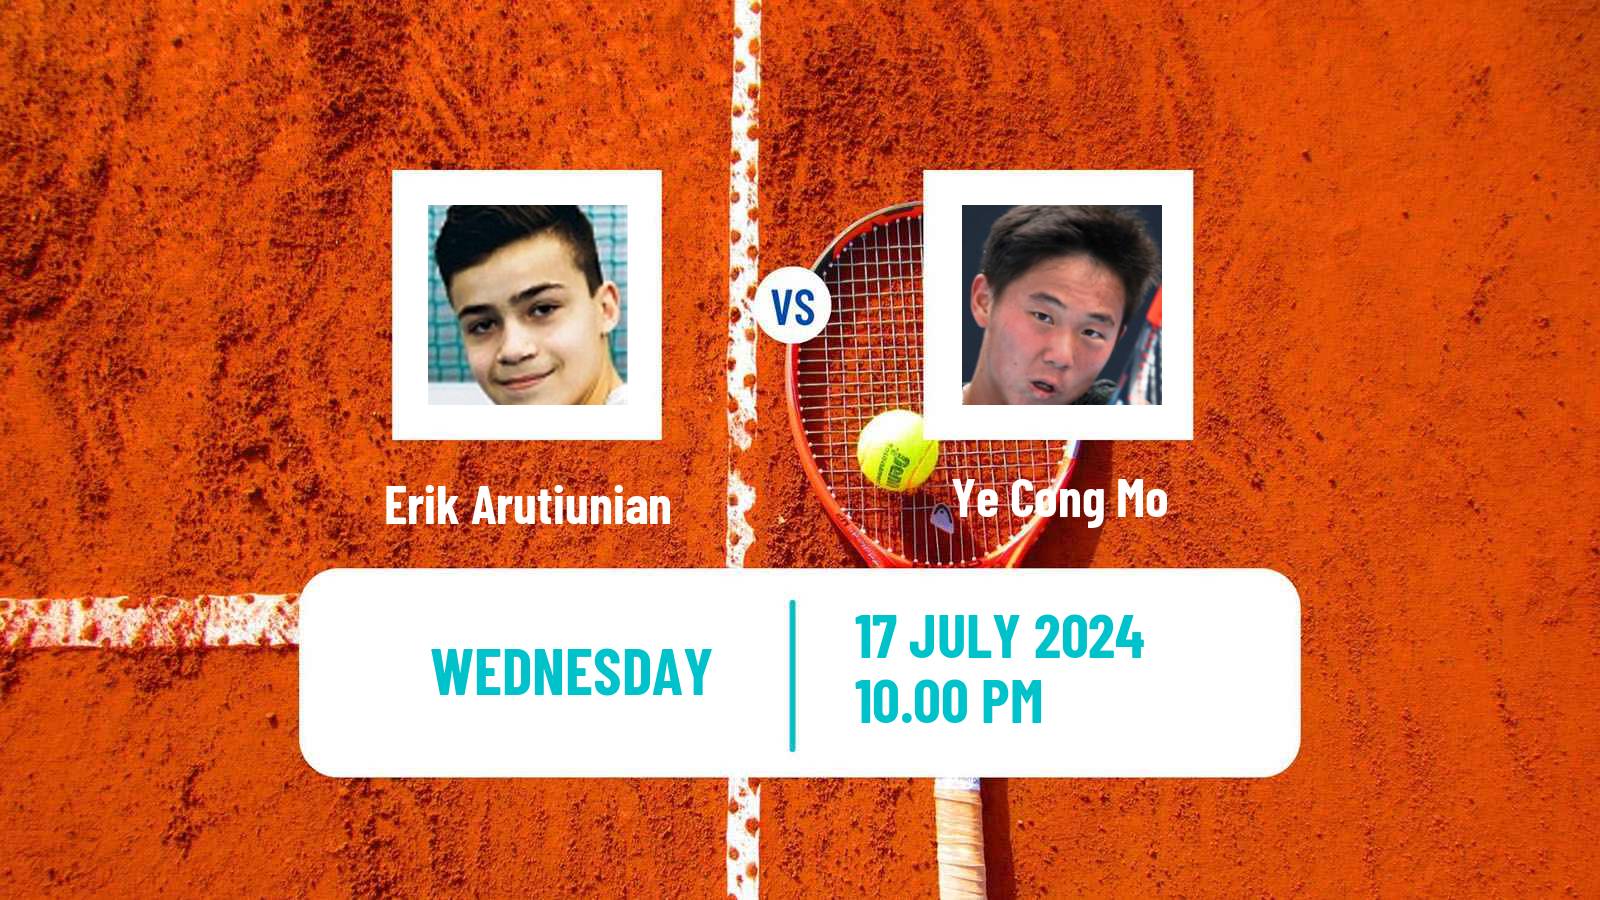 Tennis ITF M25 Tianjin 2 Men Erik Arutiunian - Ye Cong Mo